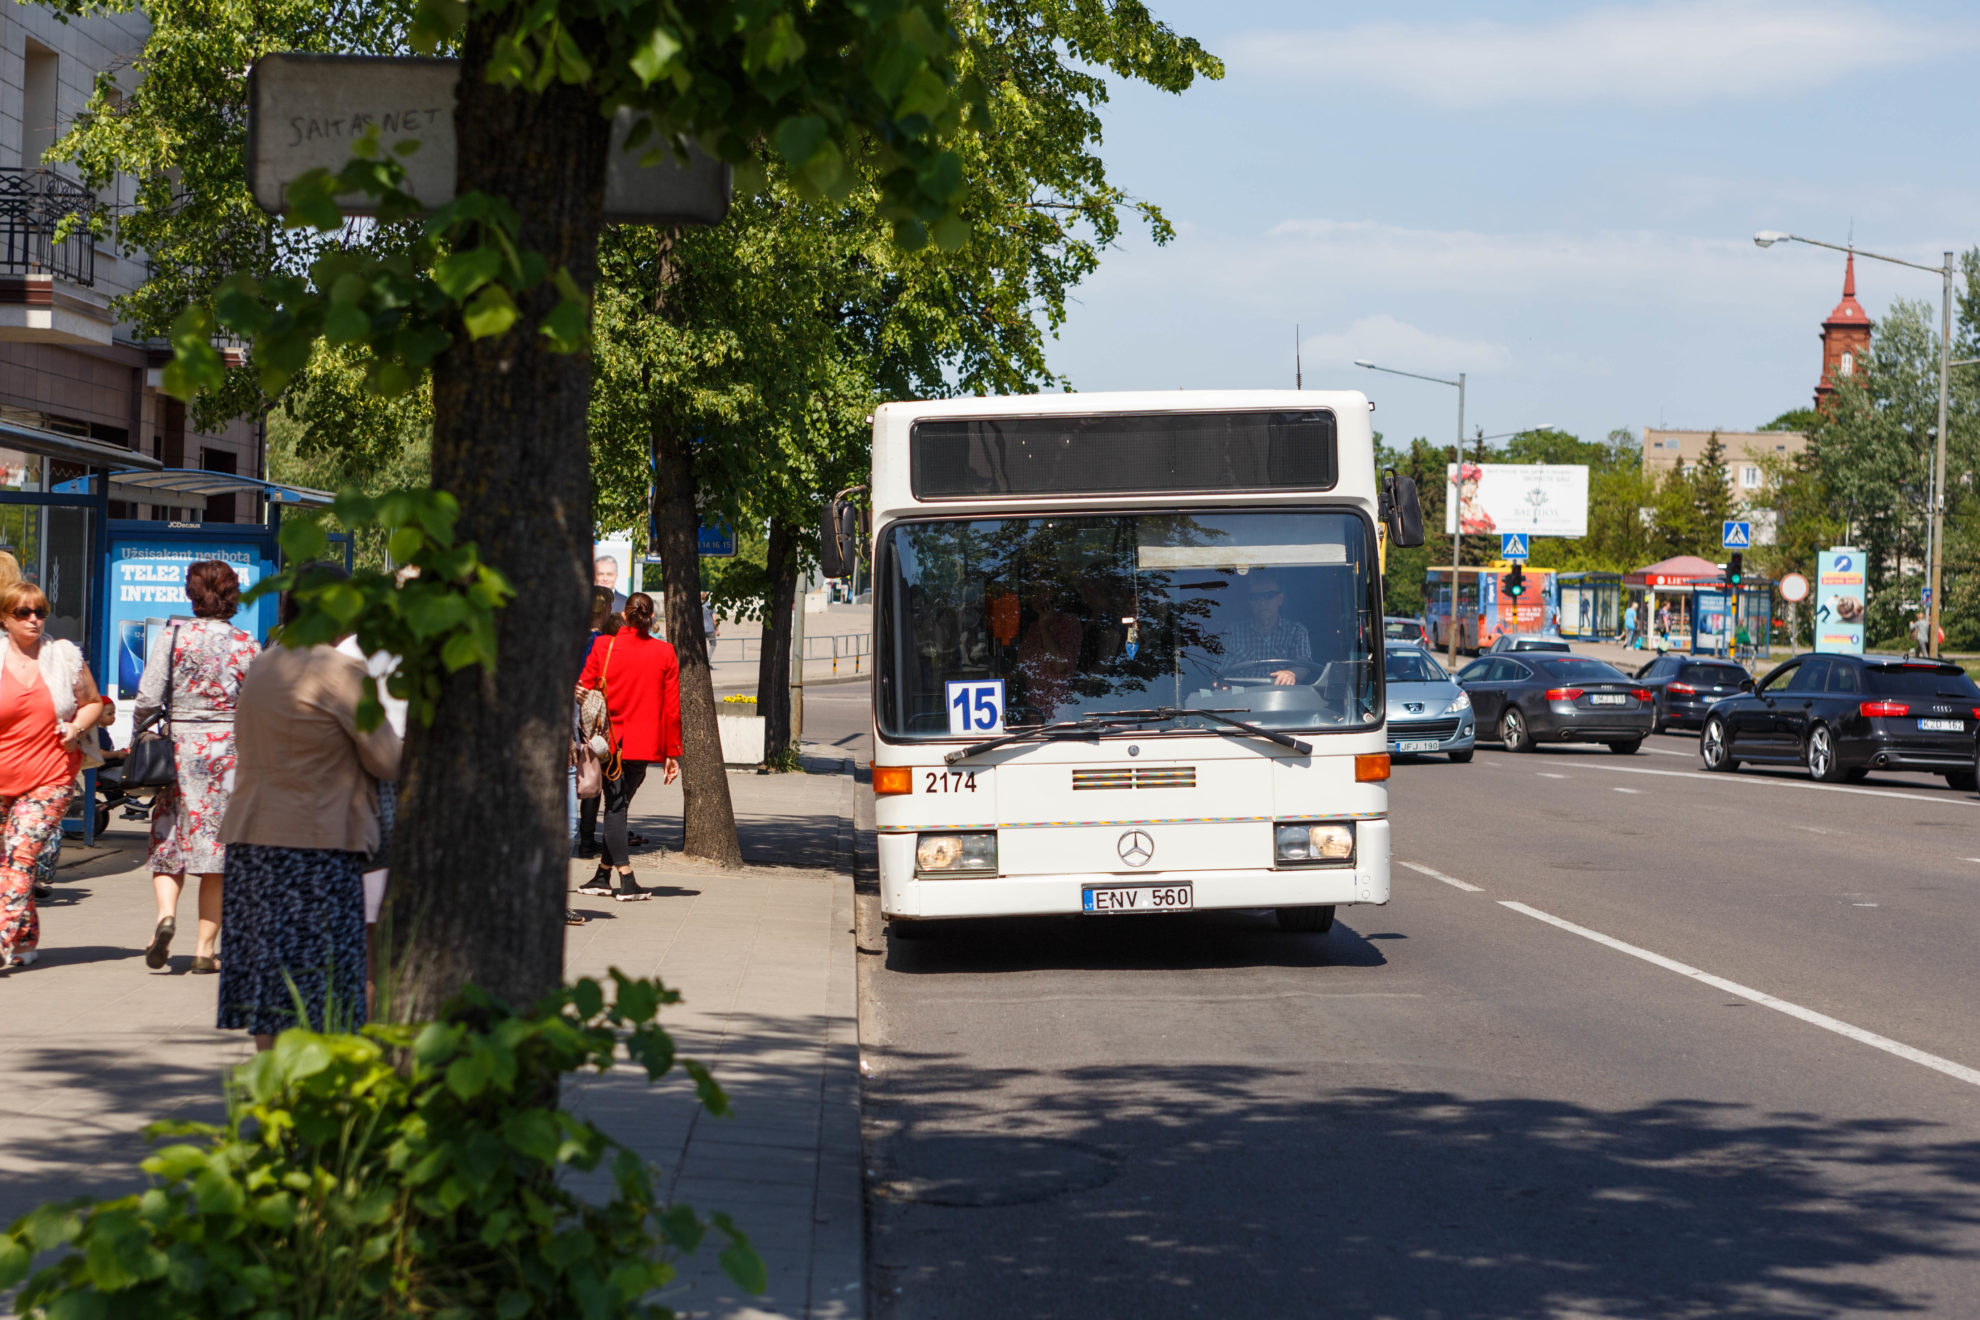 Panevėžio miesto savivaldybė pasirūpino, kad po 516-ojo miesto gimtadienio renginių gyventojai į namus galėtų patogiai grįžti viešuoju transportu. Rugsėjo 6–7 dienomis autobusų parkas organizuoja papildomus vakarinius reisus.